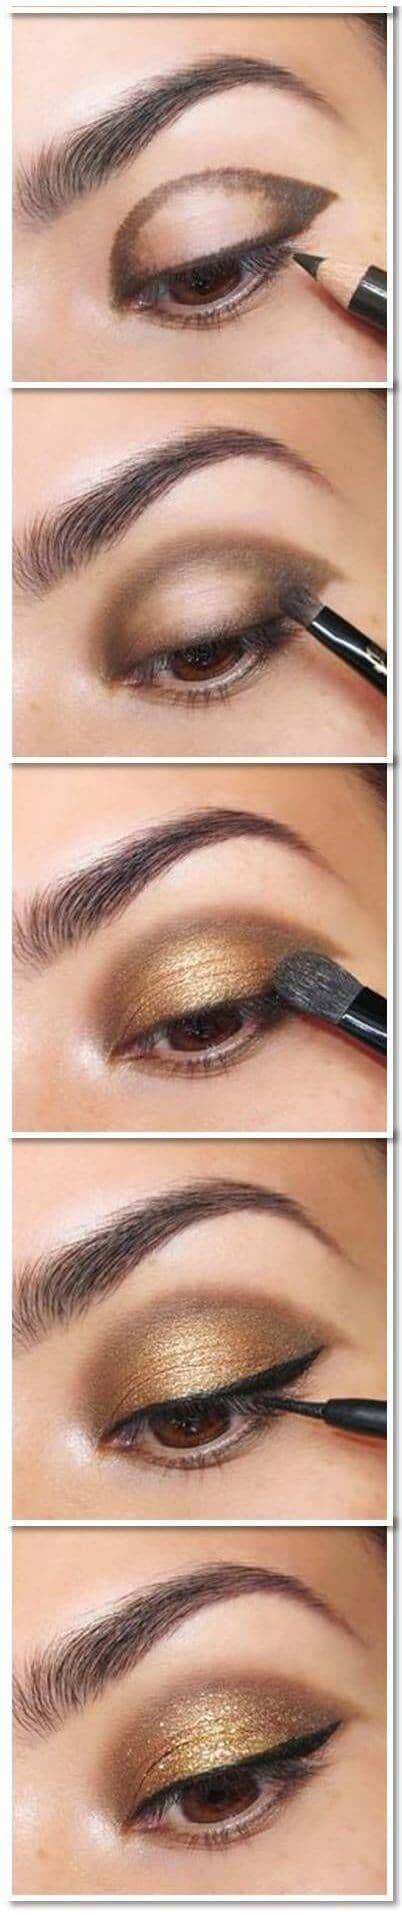 makeup-tutorial-eyeshadow-62_2 Make-up tutorial eyeshadow